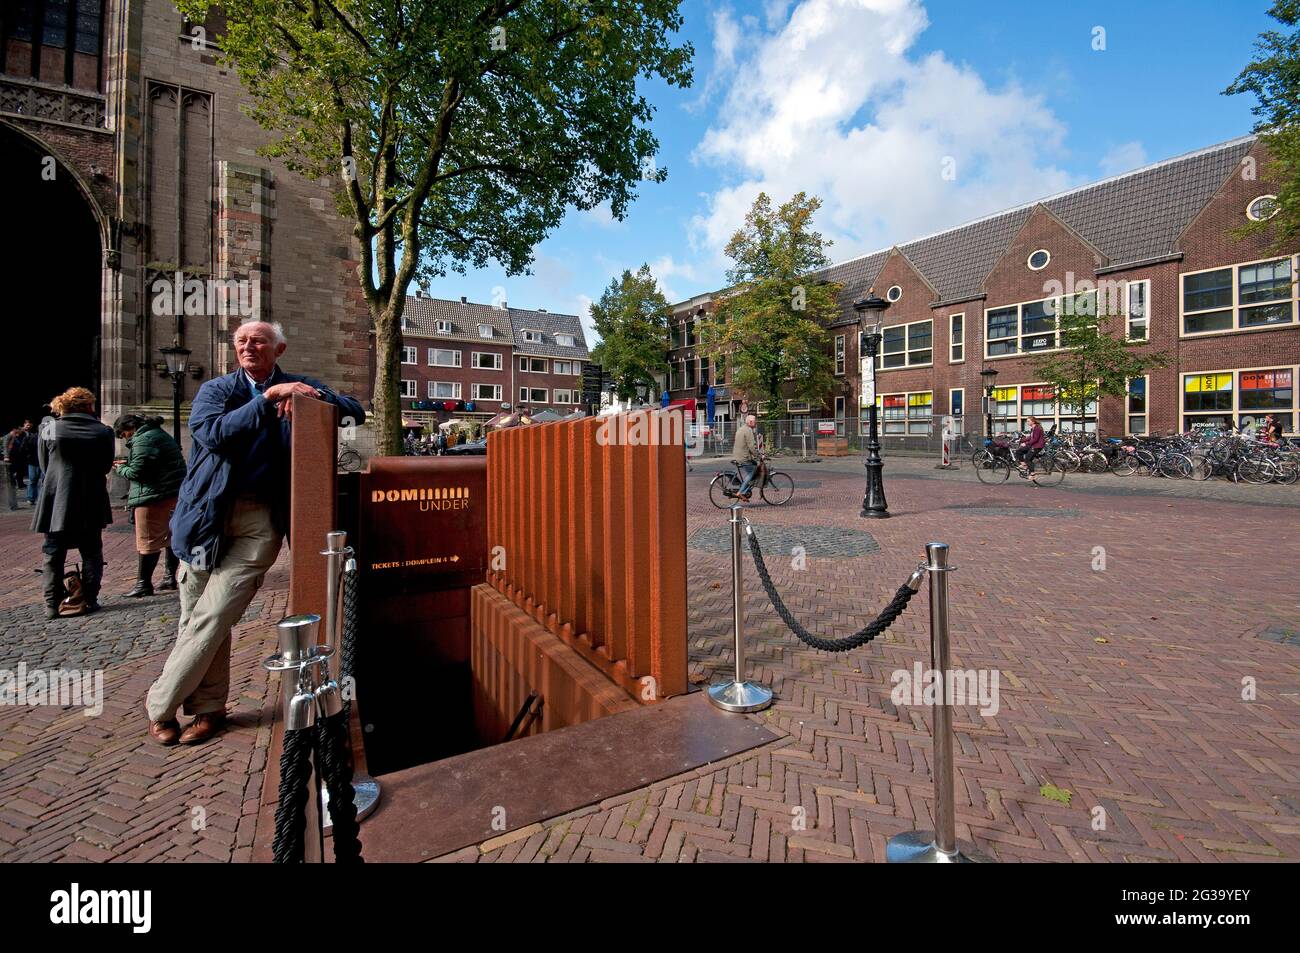 Ingresso al DOMunder di Domplein (Piazza della Cattedrale), Utrecht, Paesi Bassi Foto Stock